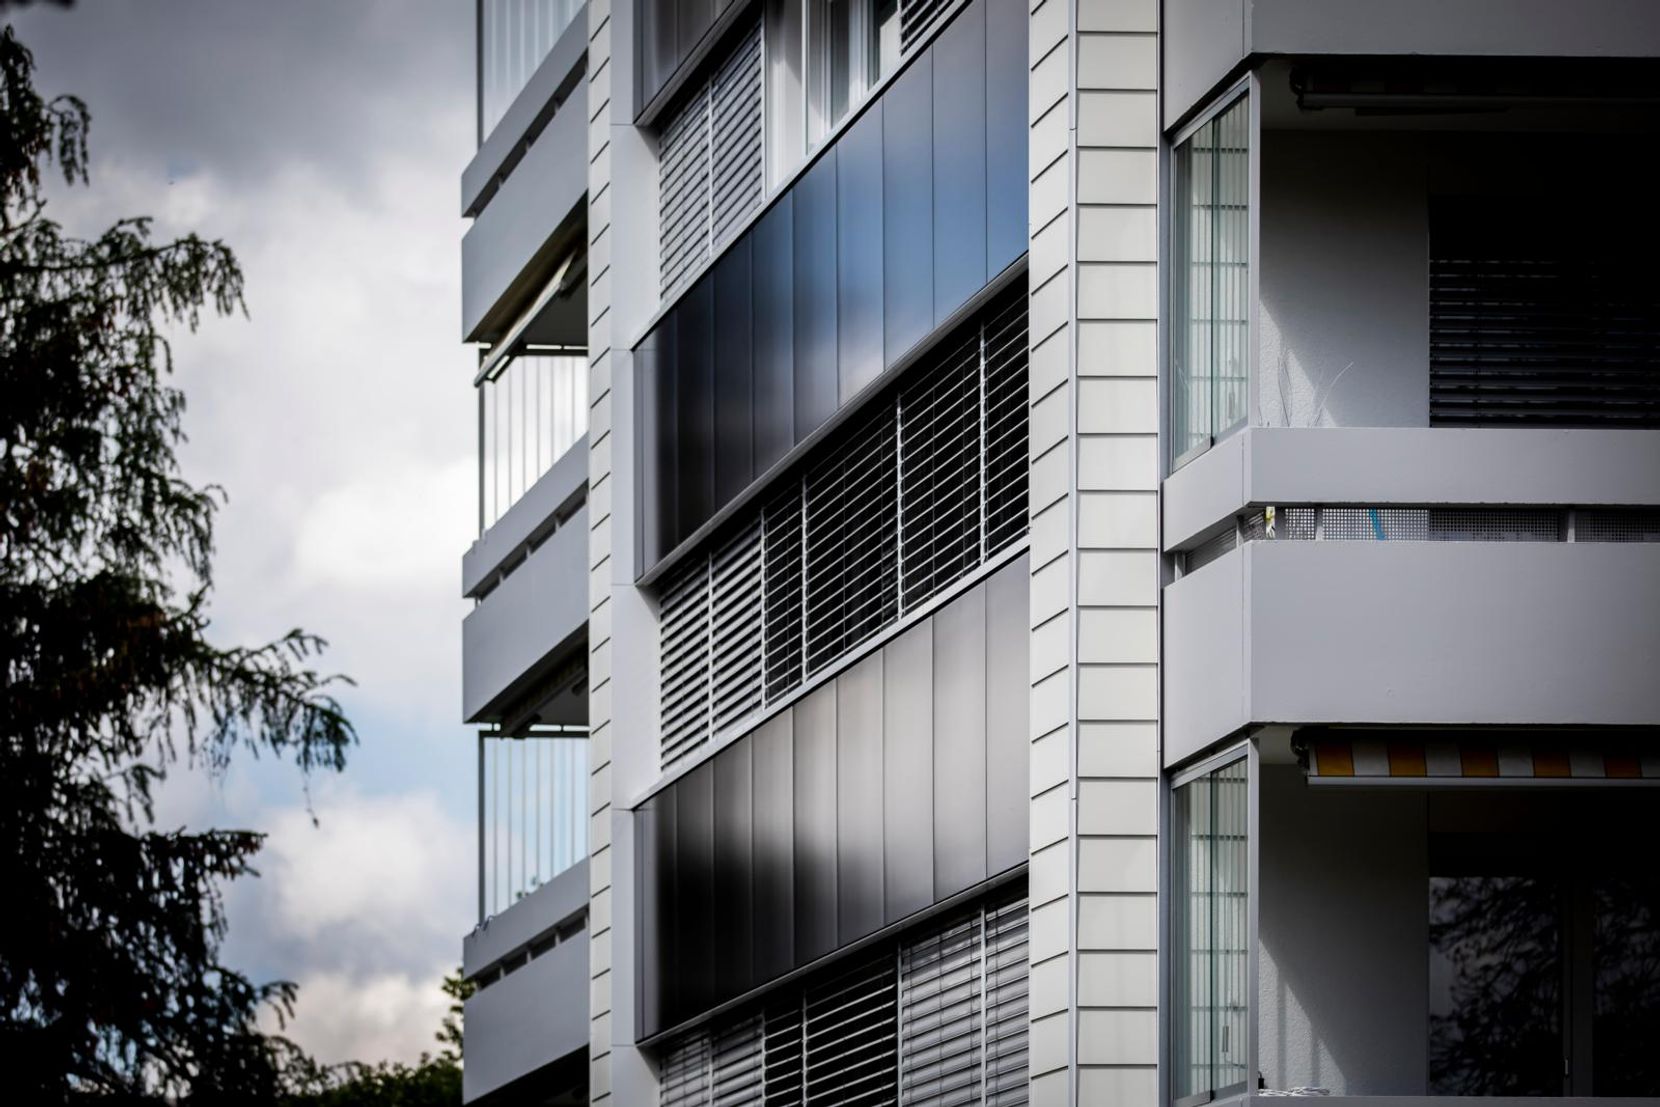 Solarzellen an einem Gebäude